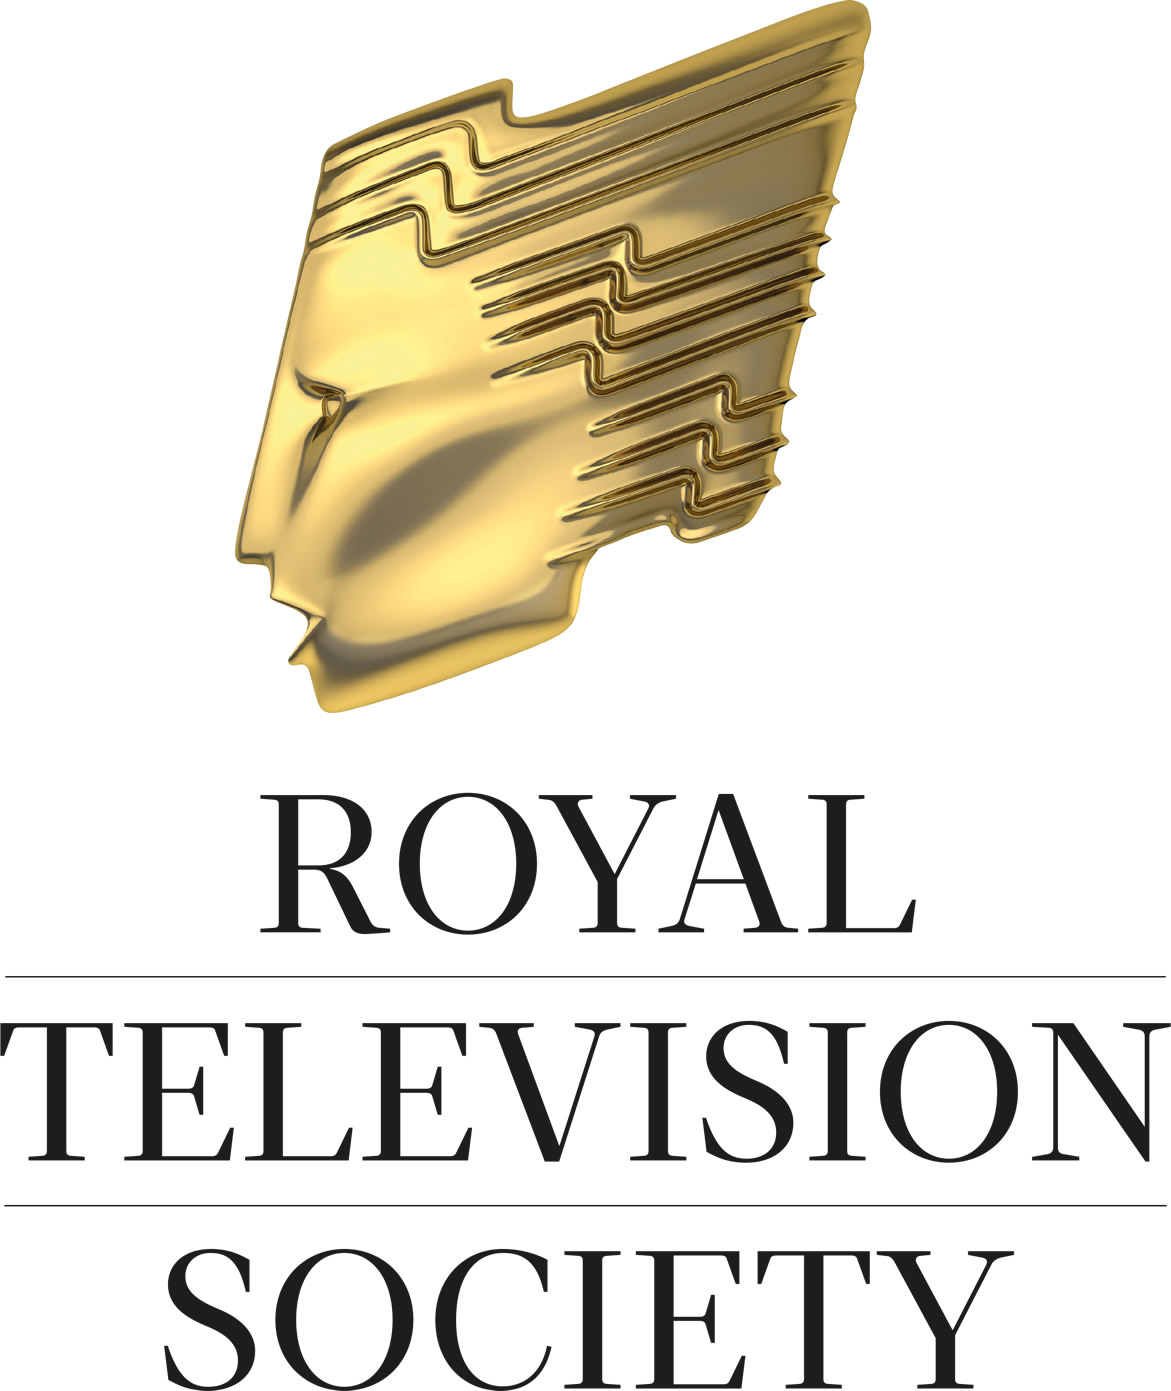 The Royal Television Society logo